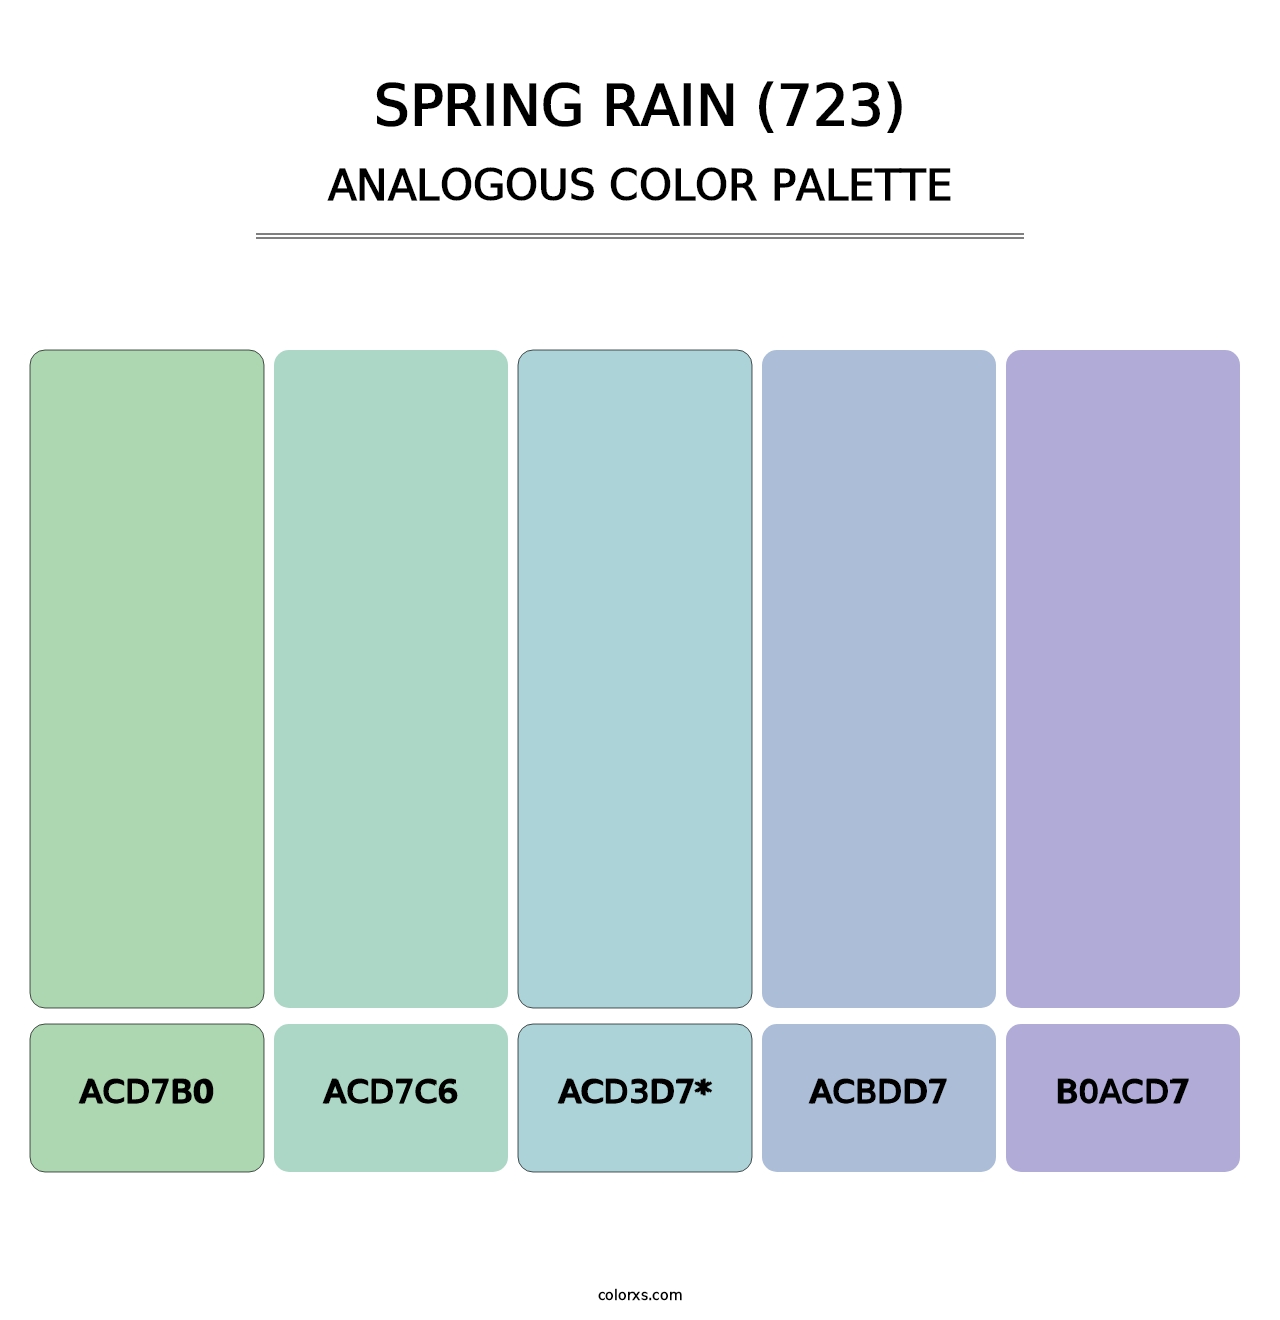 Spring Rain (723) - Analogous Color Palette